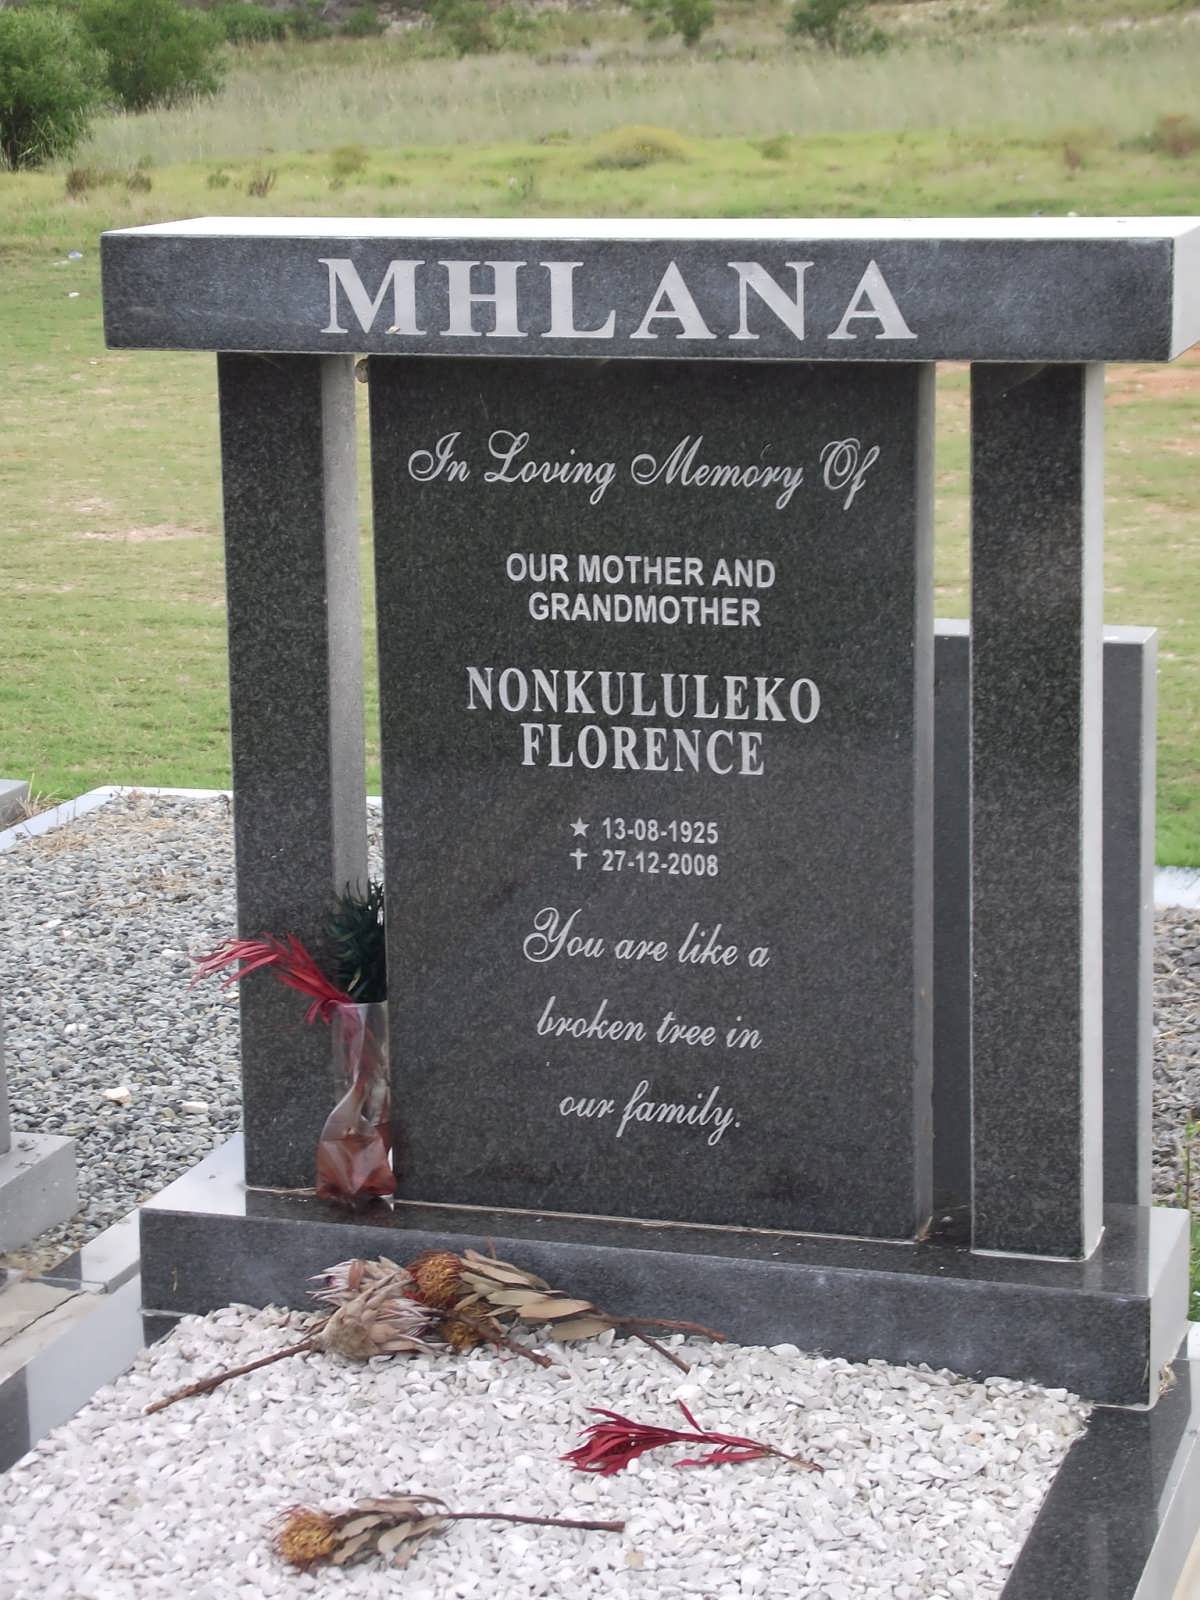 MHLANA Nonkululeko Florence 1925-2008